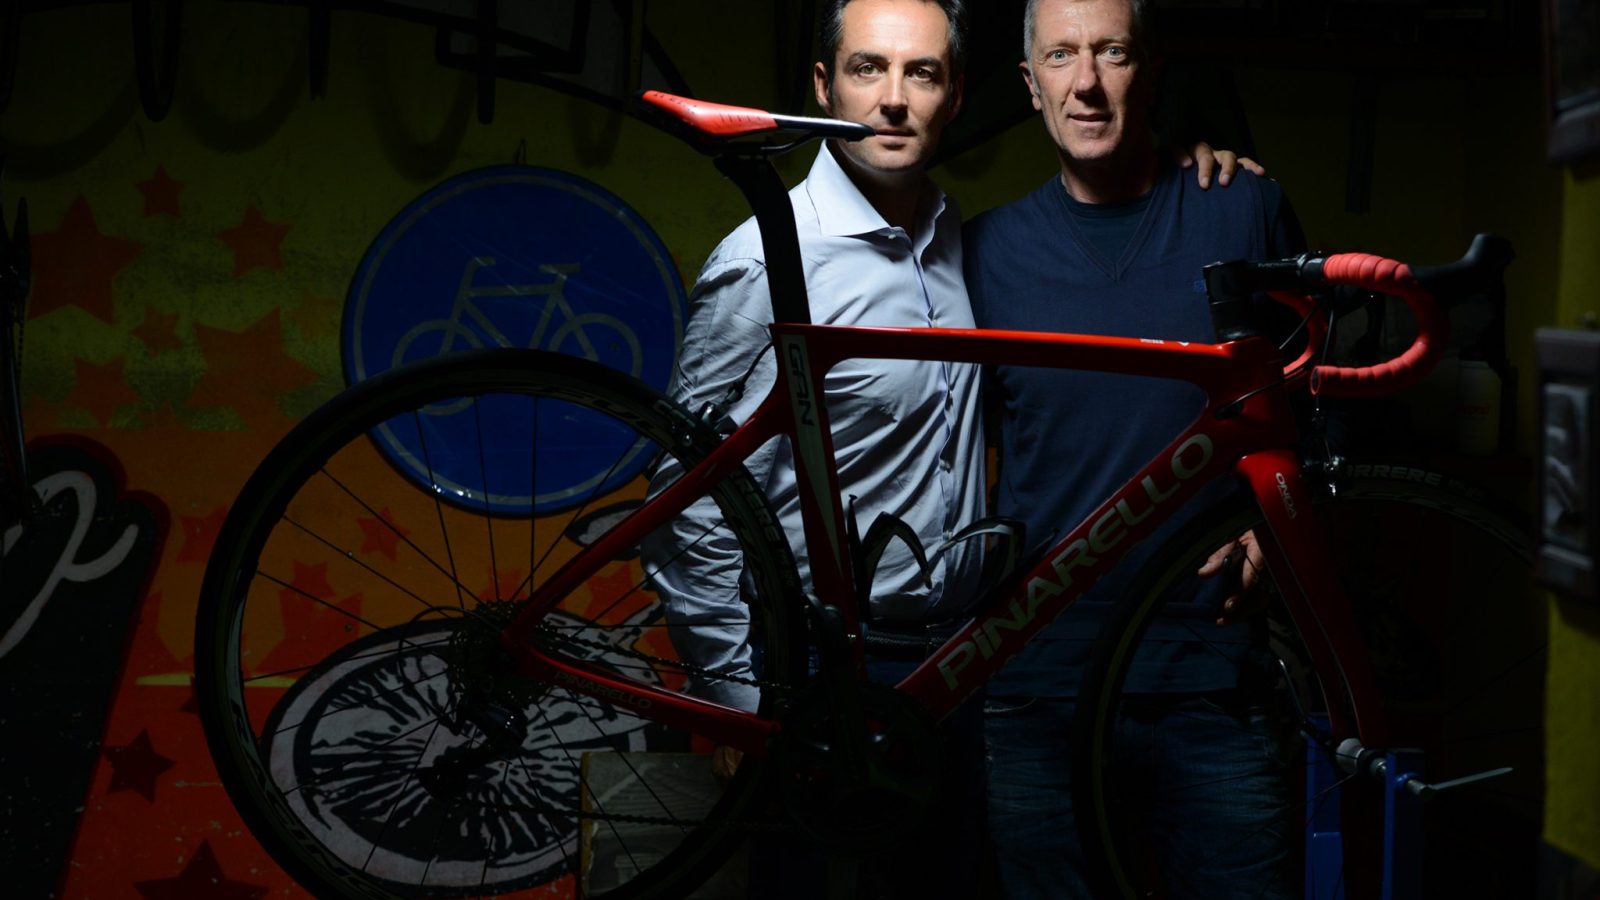 Dall’incontro tra un pioniere del bike touring e un senior manager che ha partecipato a tutte le fasi di sviluppo di internet in Italia nasce ChronòPlus